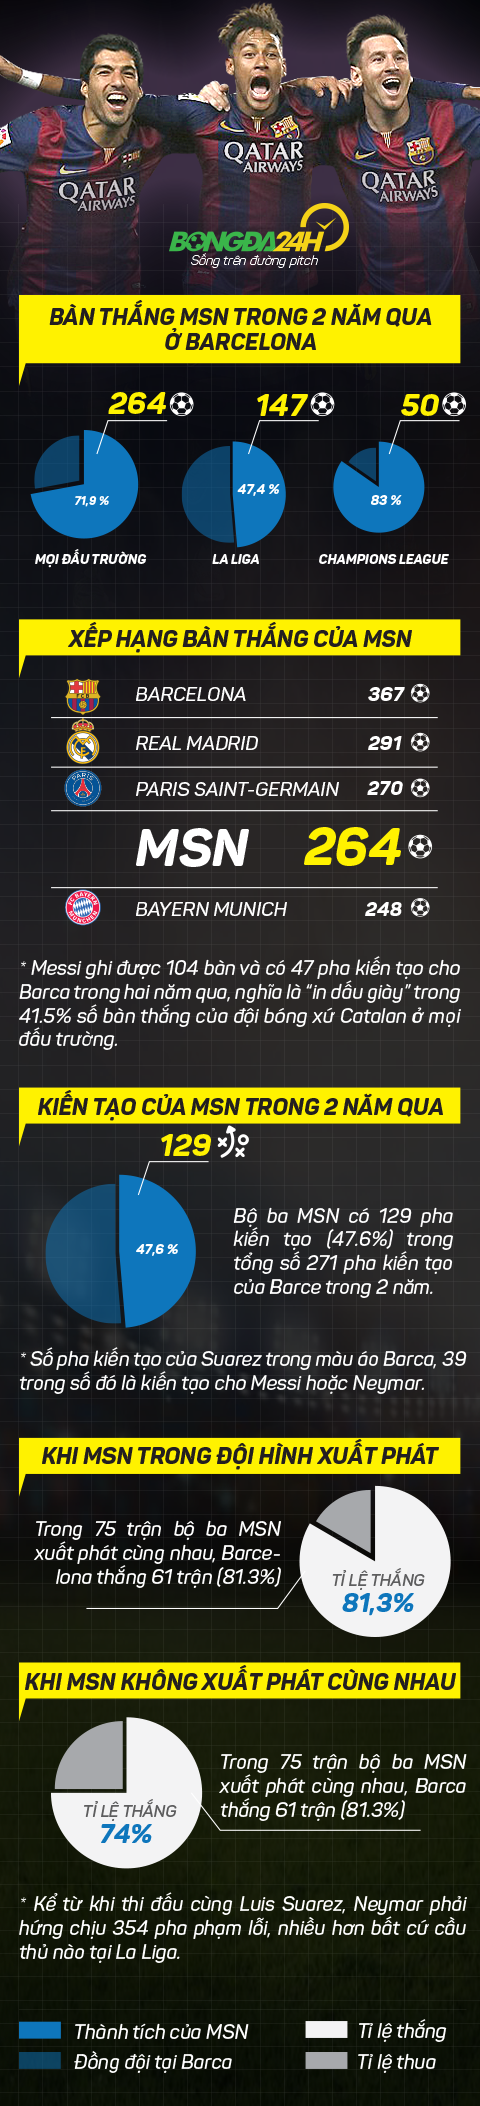 Infographic Bo ba MSN dang so the nao tai Barcelona hai nam qua hinh anh